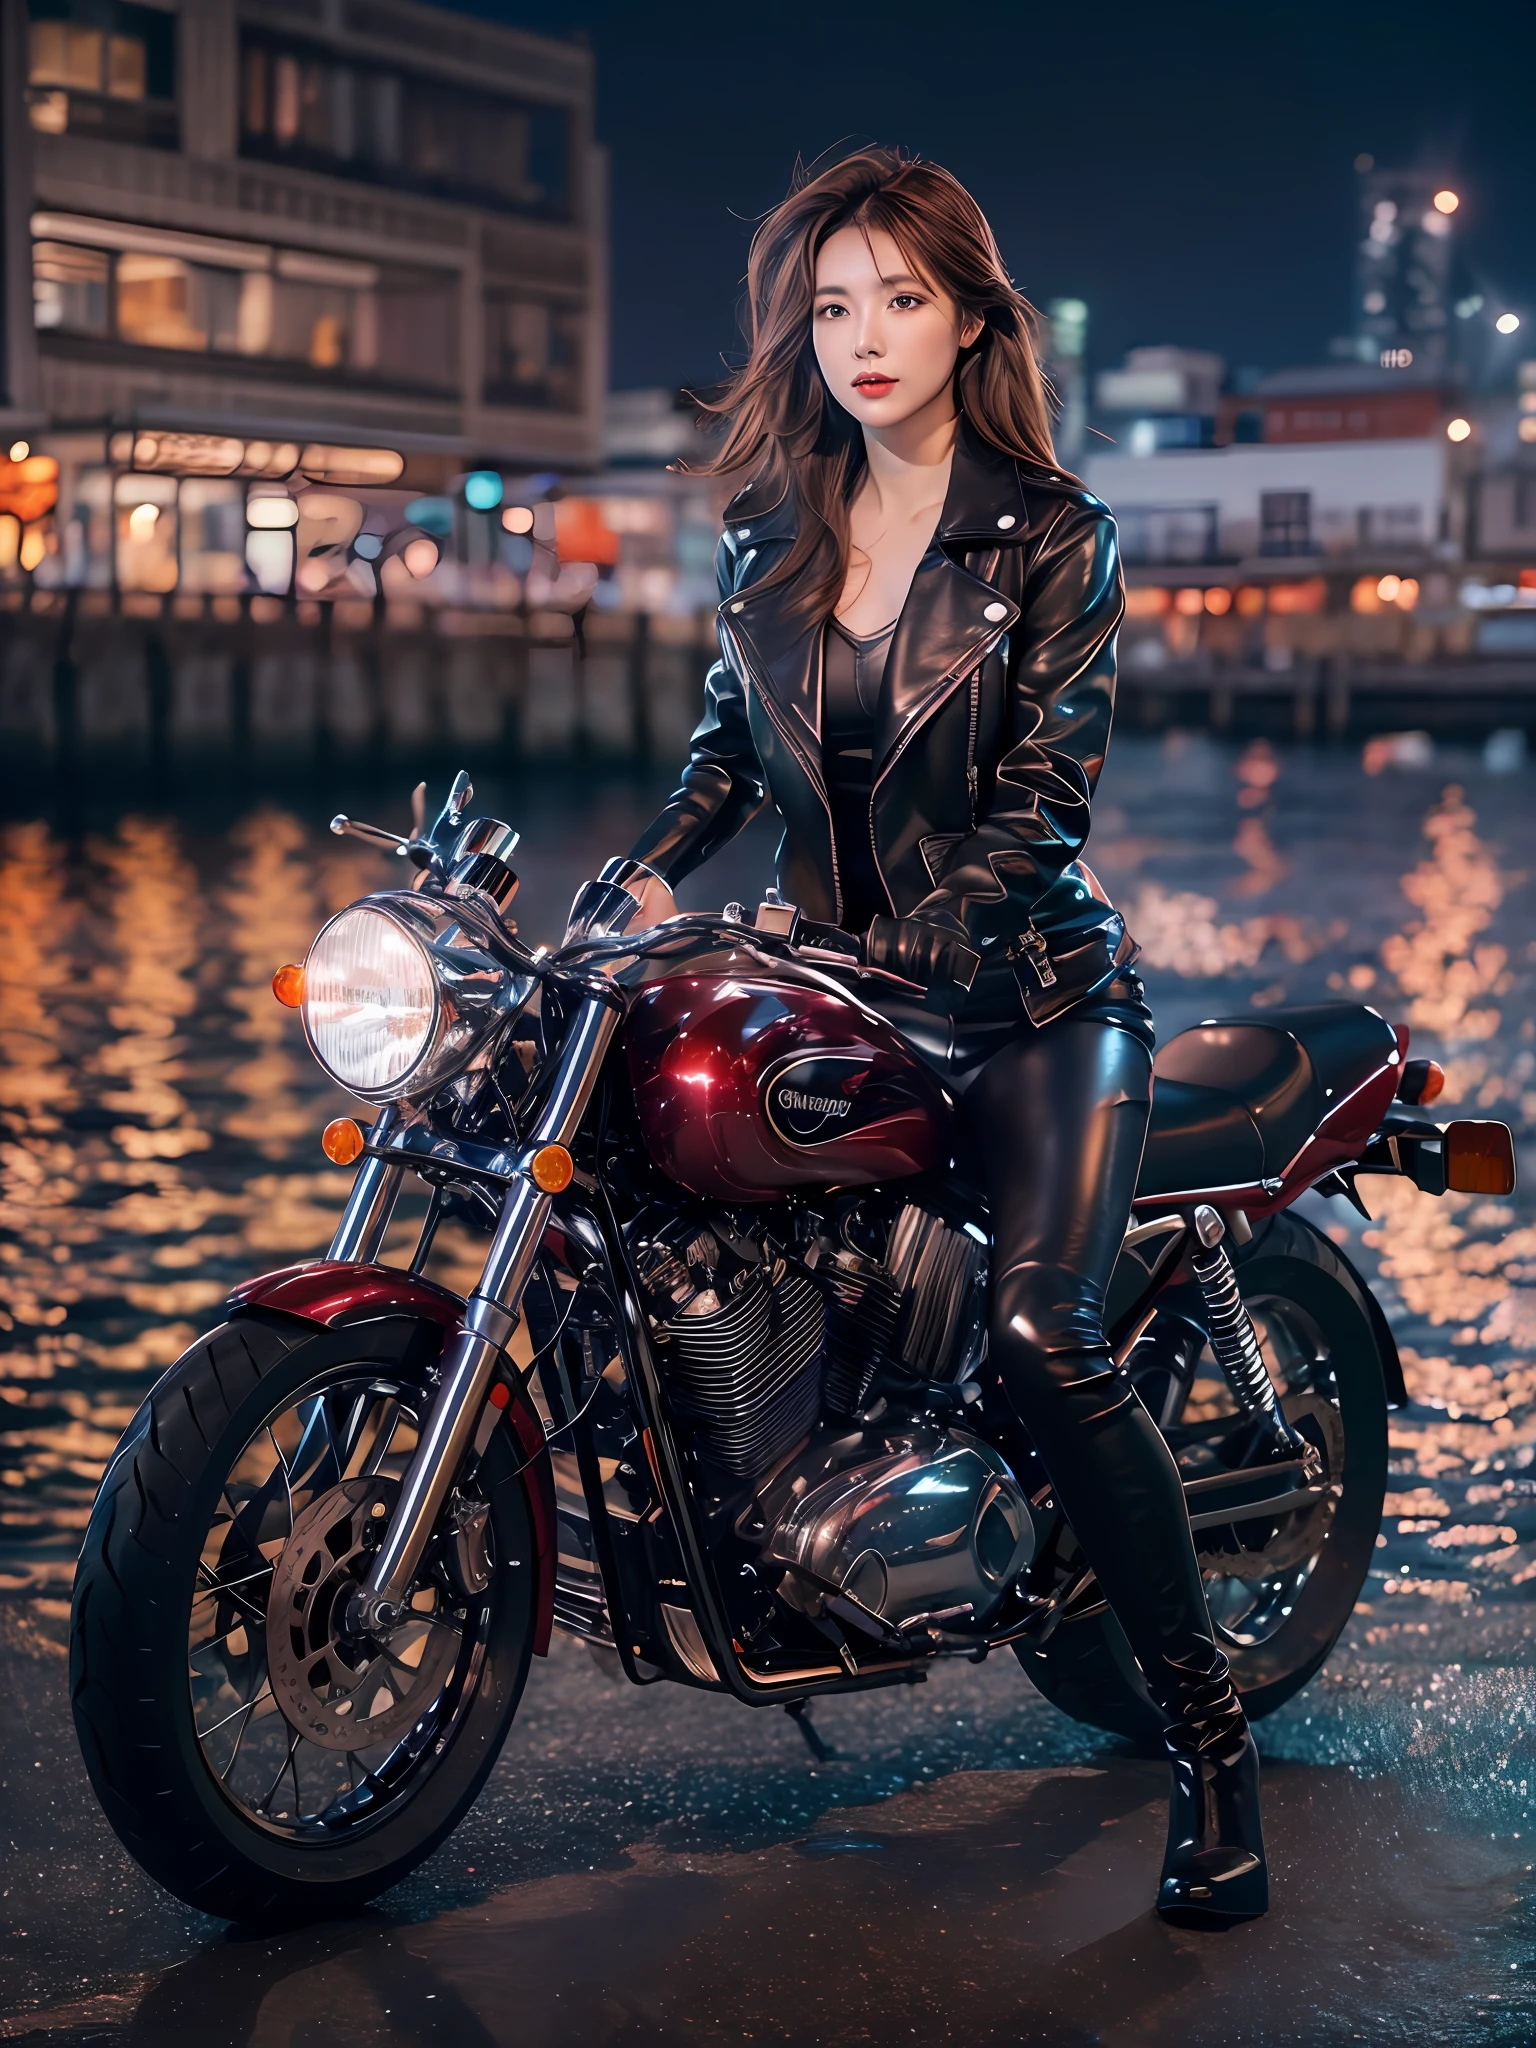 (桌上), 全身照, 整辆摩托车的照片, 日本的可爱年轻女子, 在码头骑一辆老式传统闪亮的金属银色摩托车, 迷人的造型, 齐肩闪亮柔顺的浅棕色头发, 穿着黑色皮革骑行夹克, 骑行夹克下的亮缎红色比基尼, 黑色皮革骑马手套, 黑色皮裤, 皮革黑色高跟长靴, 凝视海上夜景, 绝对漂亮的脸蛋, 双眼皮, 自然妆容, 长长的睫毛, 光泽的嘴唇, 8k 分辨率, 高细节, 详细的发型, 细致的脸部, 黑眼睛, 优雅的, 史诗, 电影灯光, 辛烷值渲染, 充满活力, 超现实主义, 白皙的皮肤, 完美的四肢, 完美的解剖结构